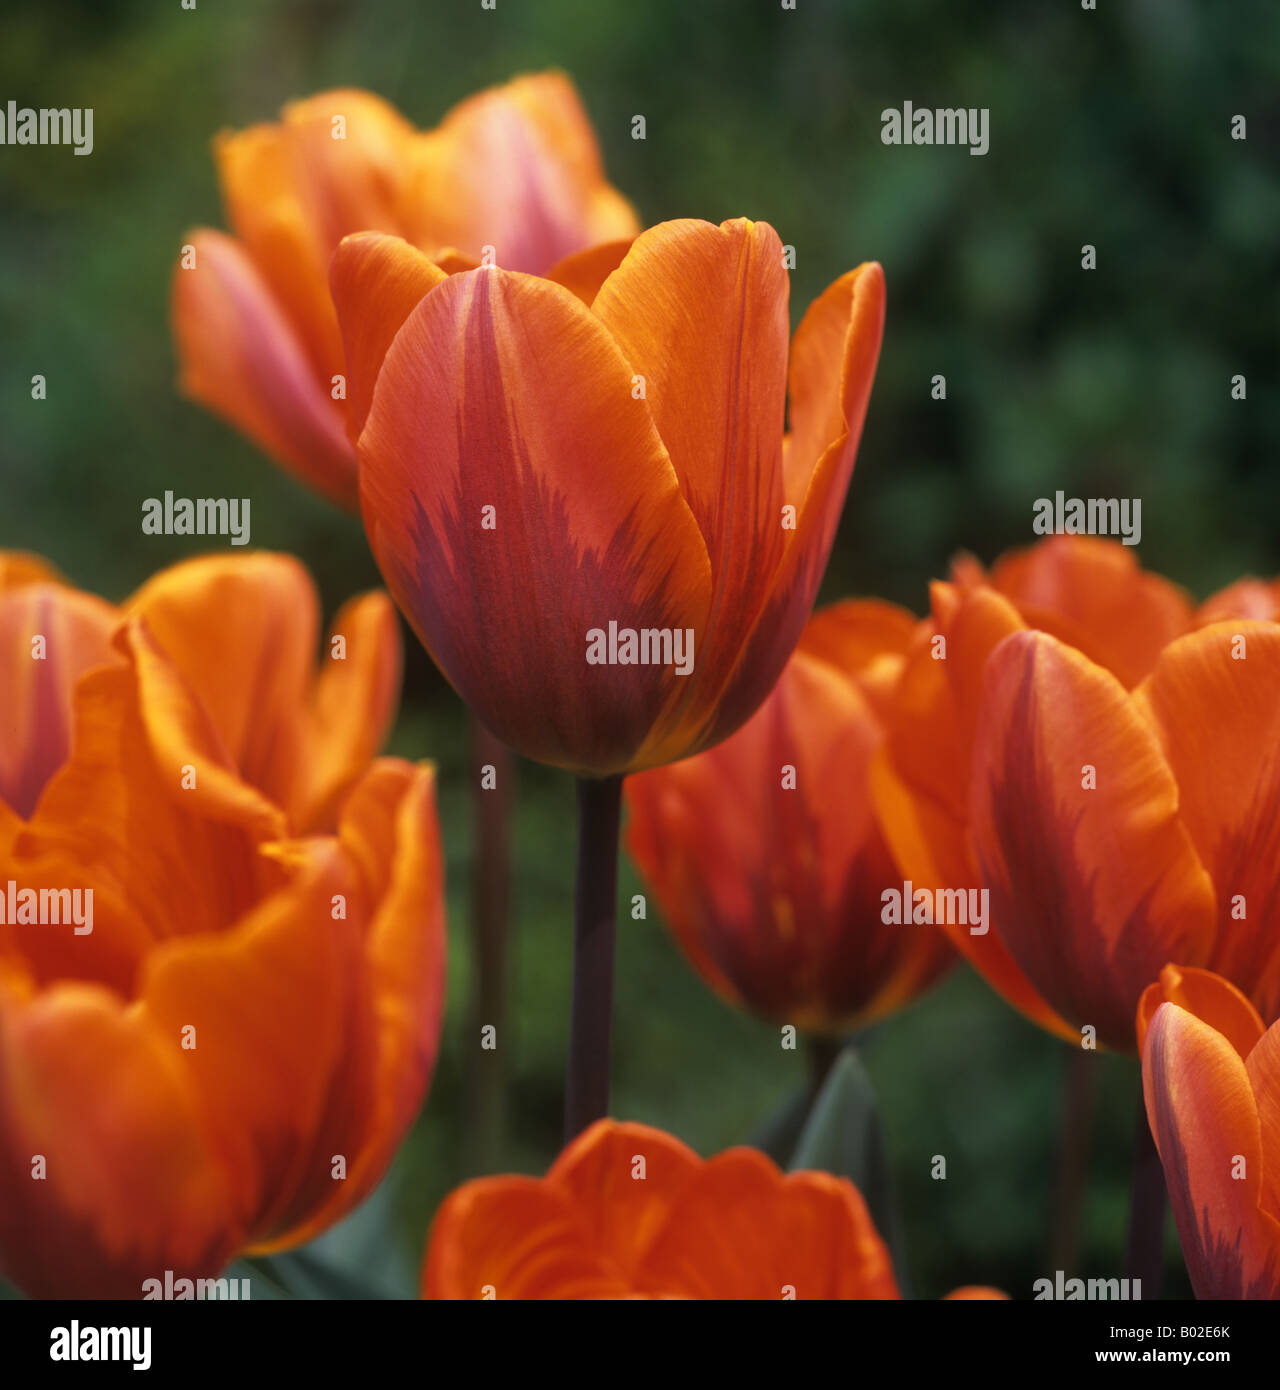 Fiore di tulip principessa Irene insolita variante colore Foto Stock